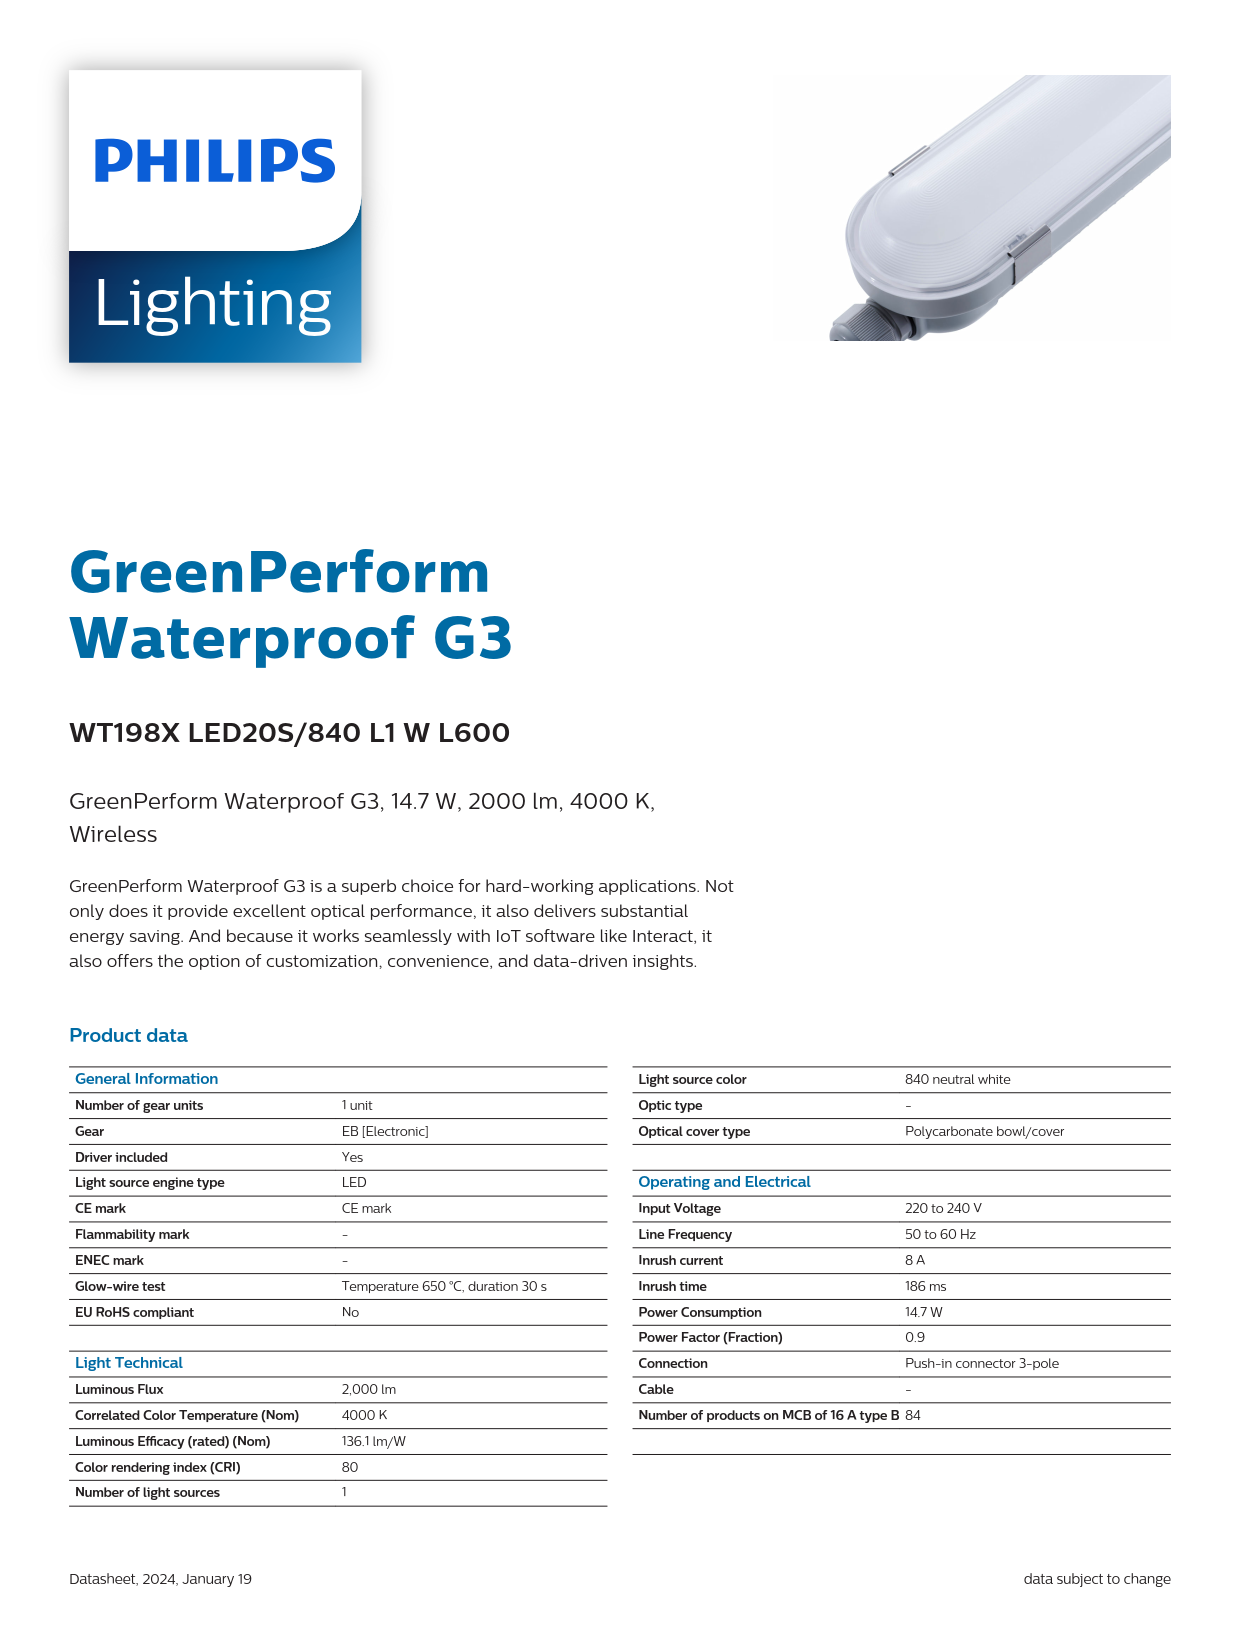 PHILIPS Waterproof Fixture light WT198X LED20S/840 L1 W L600 911401551502